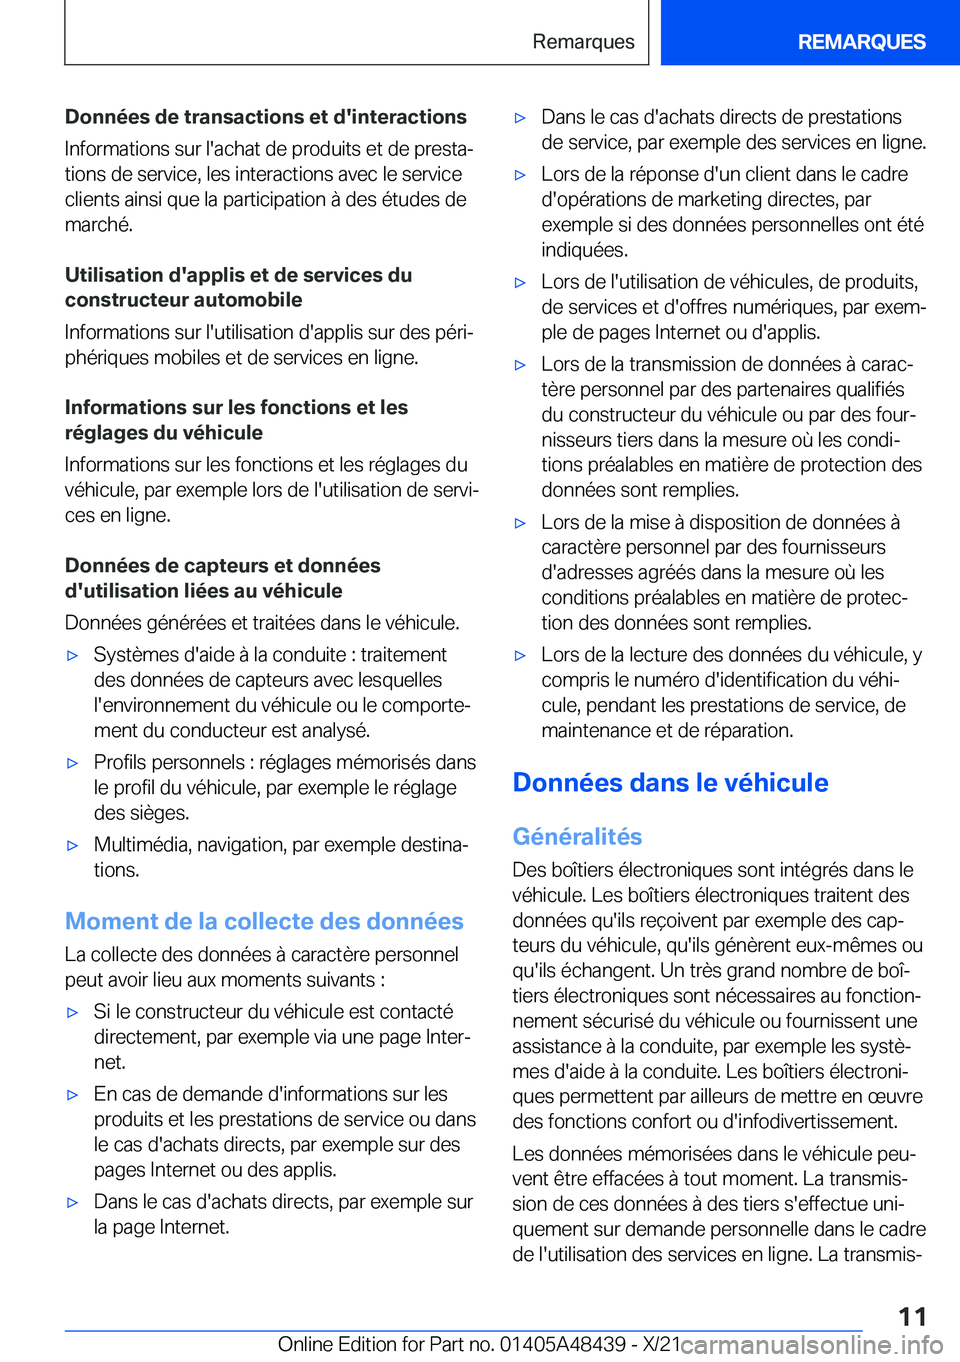 BMW X7 2022  Notices Demploi (in French) �D�o�n�n�é�e�s��d�e��t�r�a�n�s�a�c�t�i�o�n�s��e�t��d�'�i�n�t�e�r�a�c�t�i�o�n�s�I�n�f�o�r�m�a�t�i�o�n�s��s�u�r��l�'�a�c�h�a�t��d�e��p�r�o�d�u�i�t�s��e�t��d�e��p�r�e�s�t�aj
�t�i�o�n